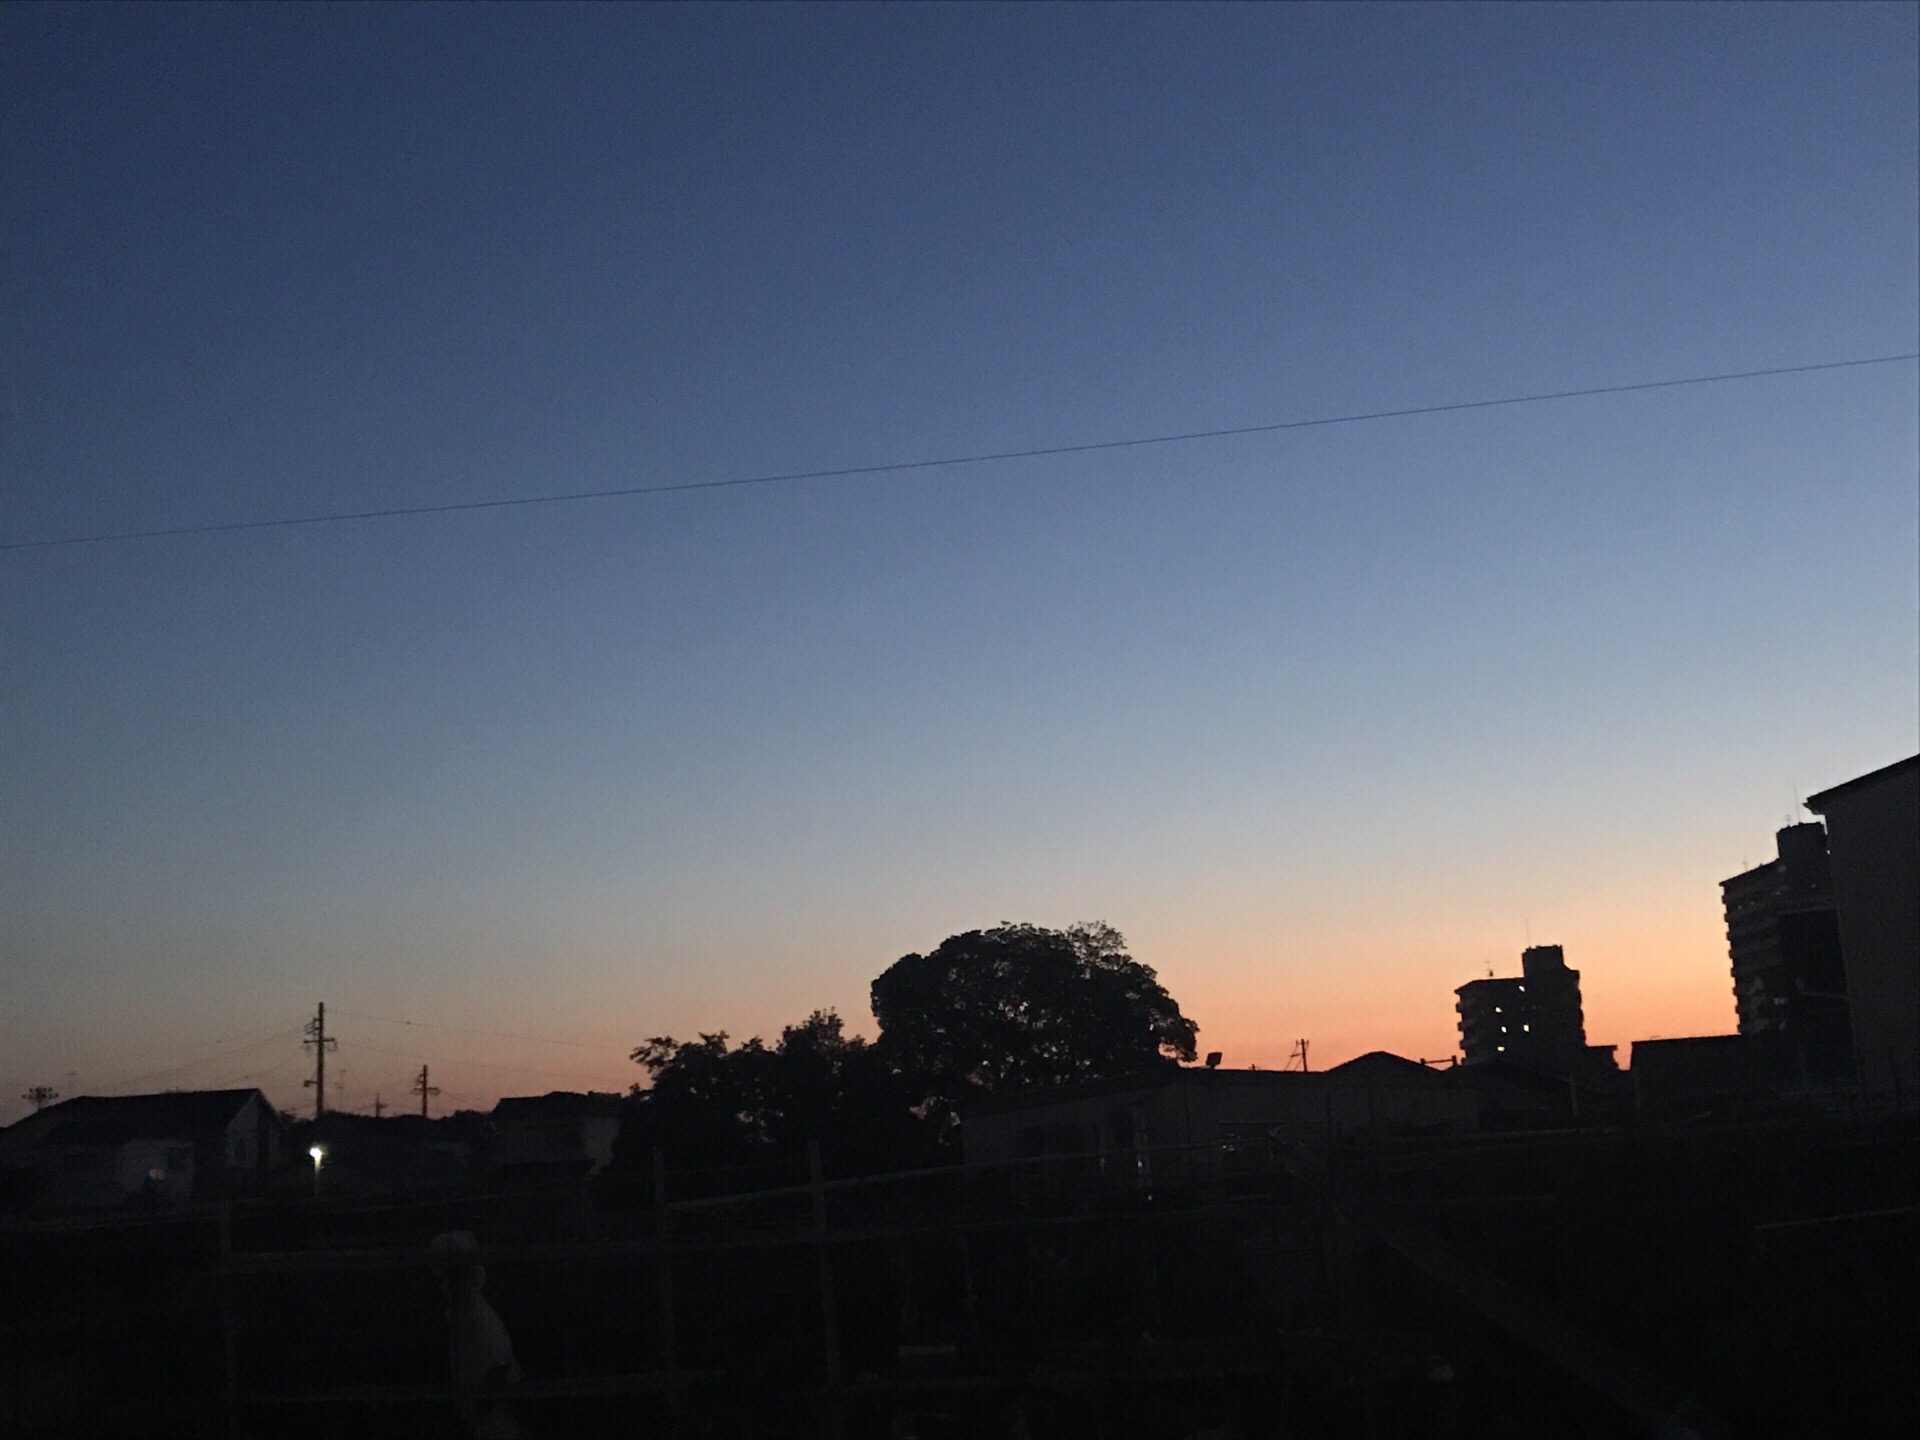 安静、静谧的晚上，日本冬天晚上天空特别深蓝，